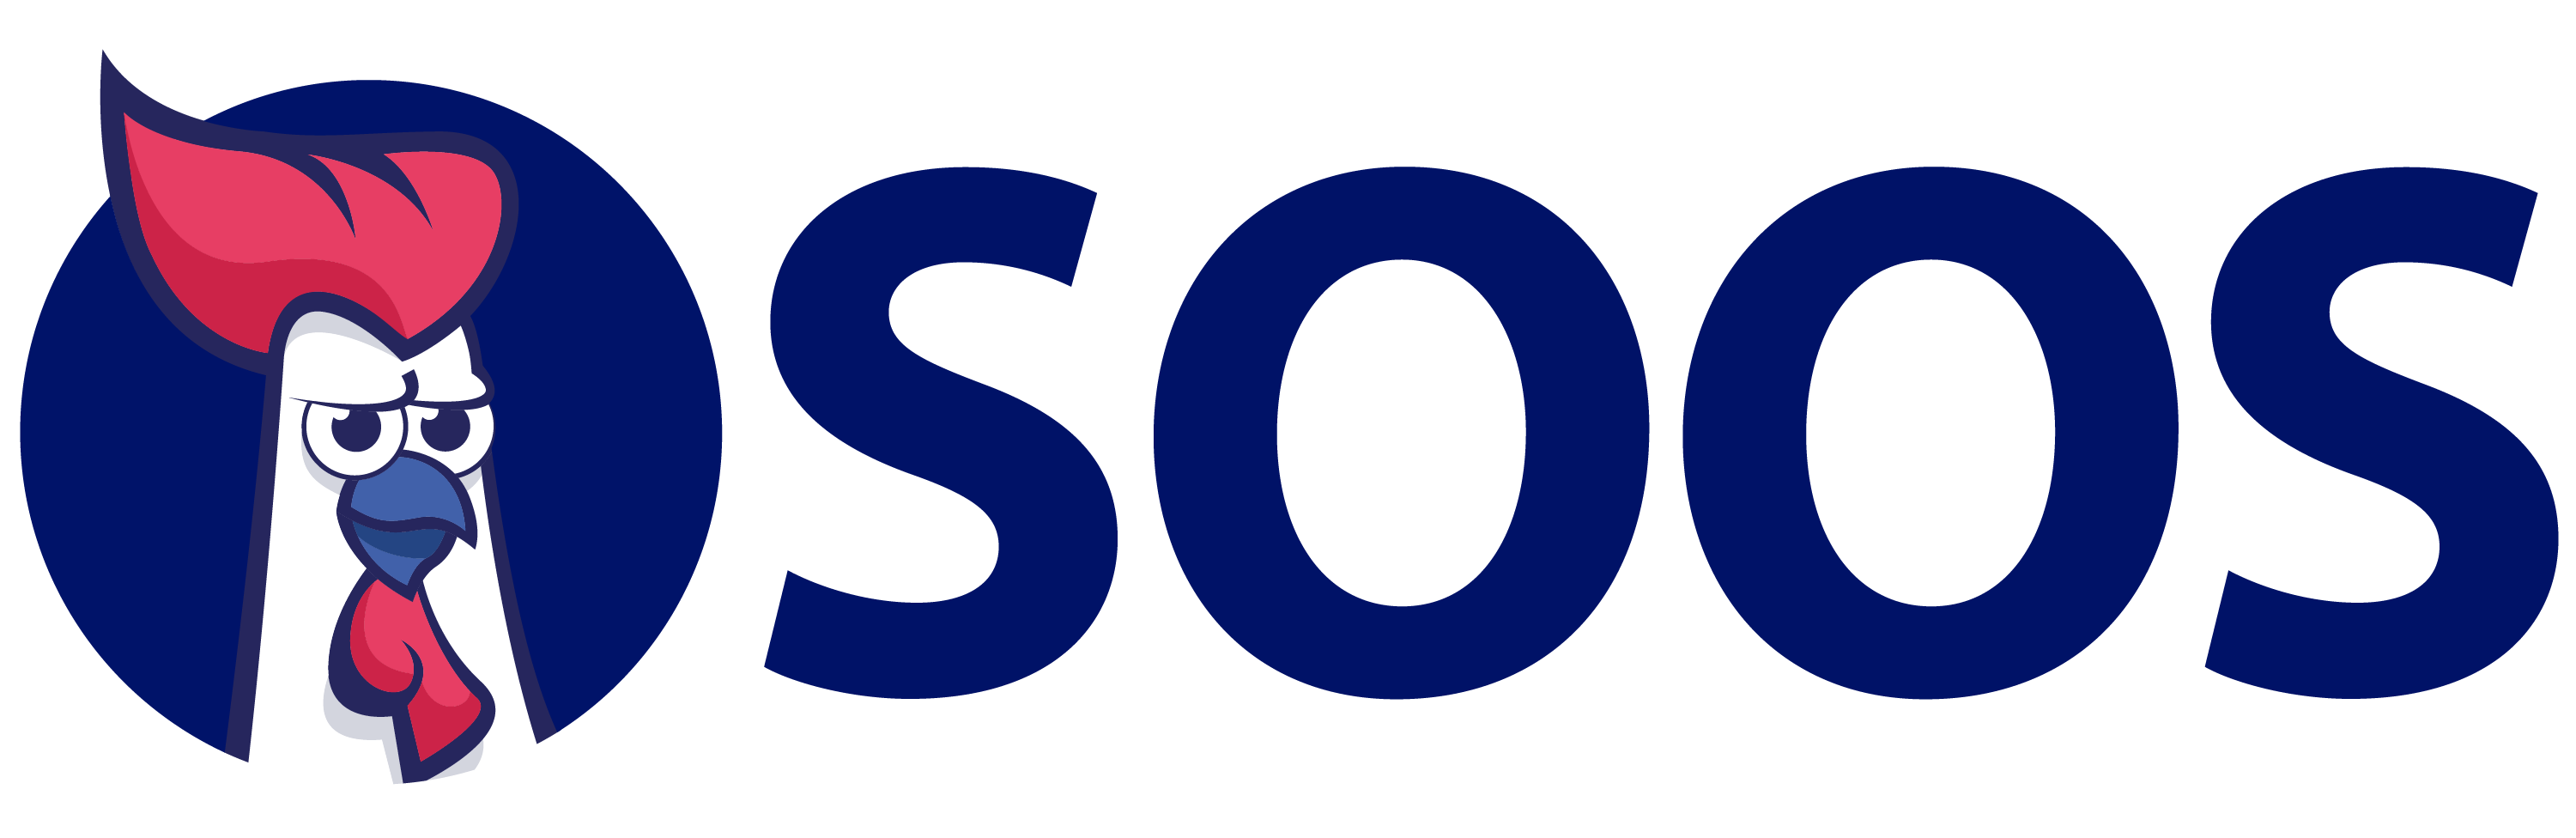 The SOOS logo